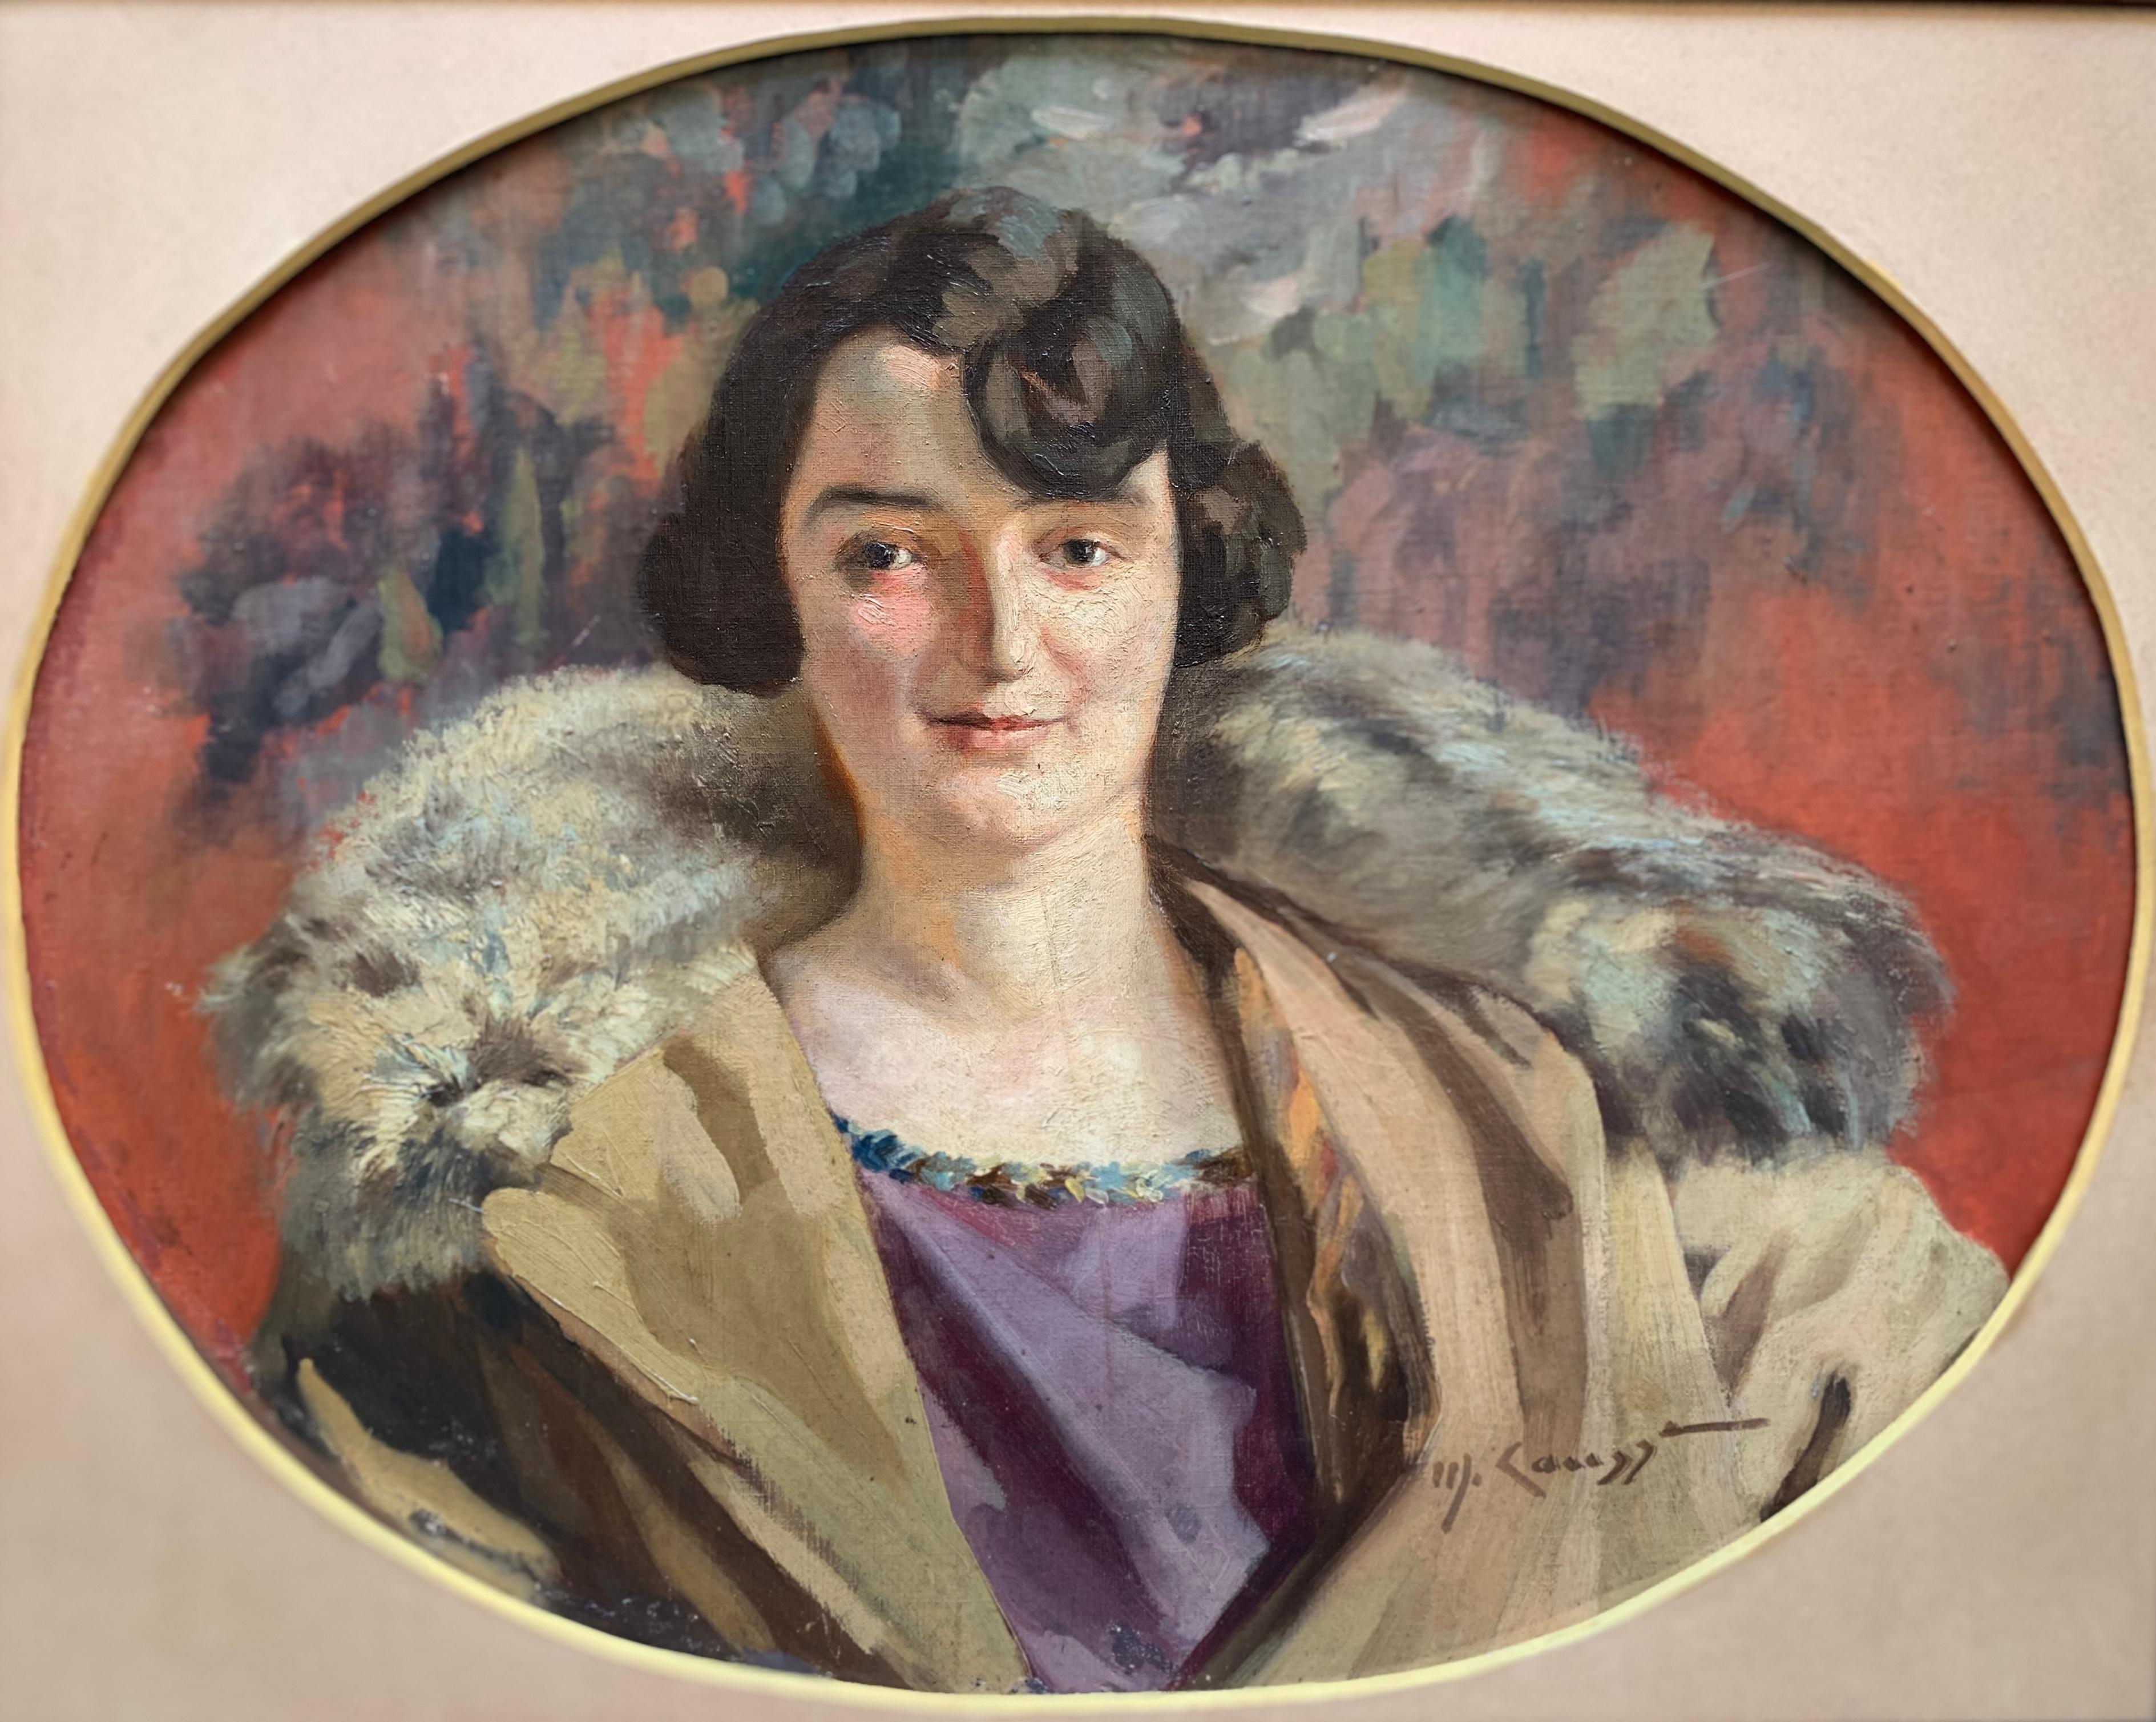 Unknown Portrait Painting – Art Deco, um 1920. Porträt einer Dame mit Bobschnitt, lila Kleid und Pelzkragen